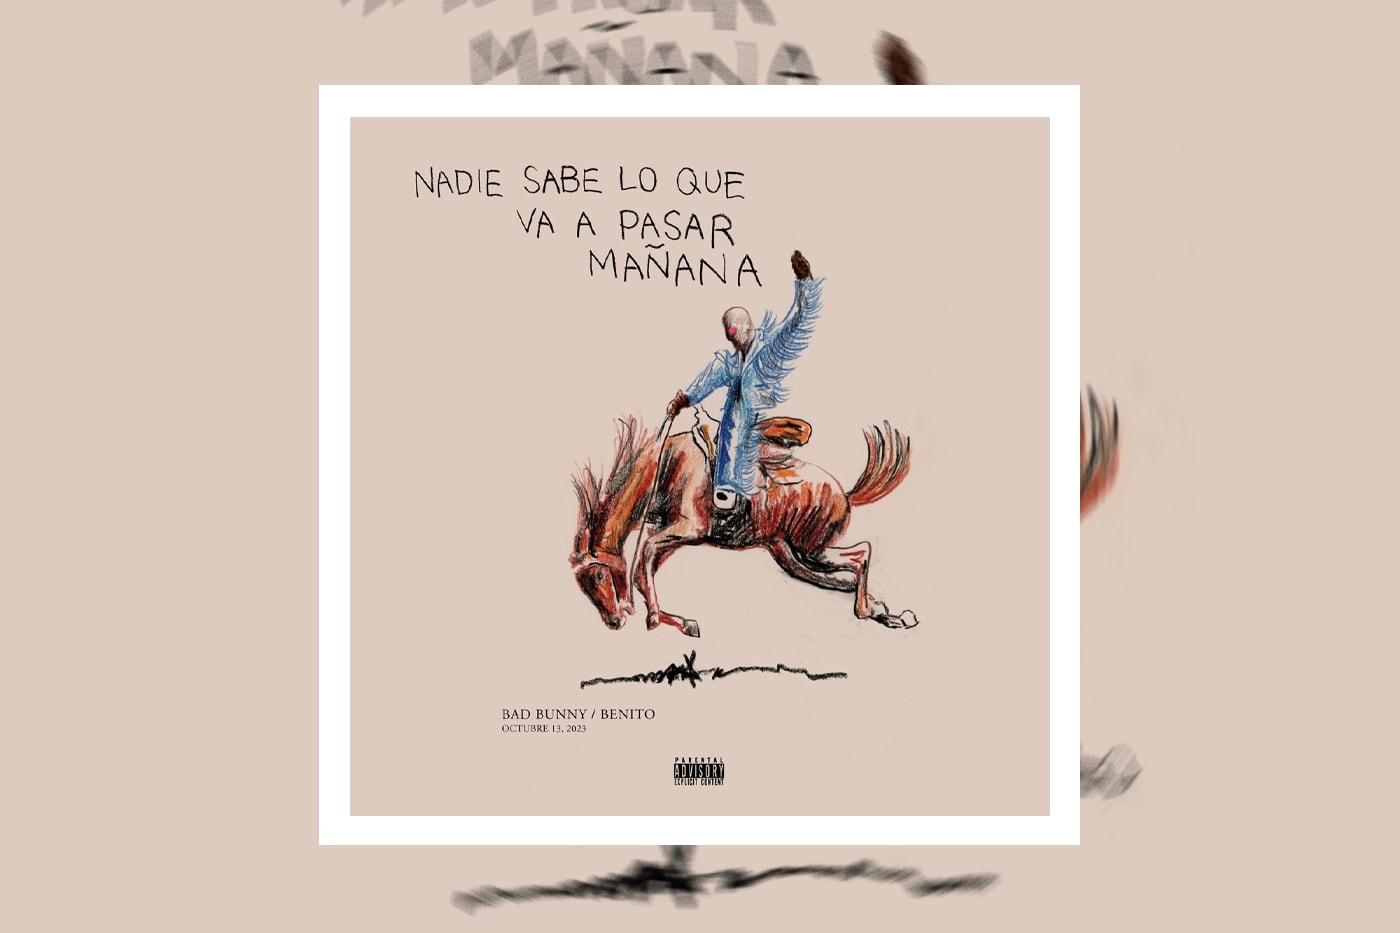 Bad Bunny Nadie Sabe Lo Que Va a Pasar Mañana Album Stream